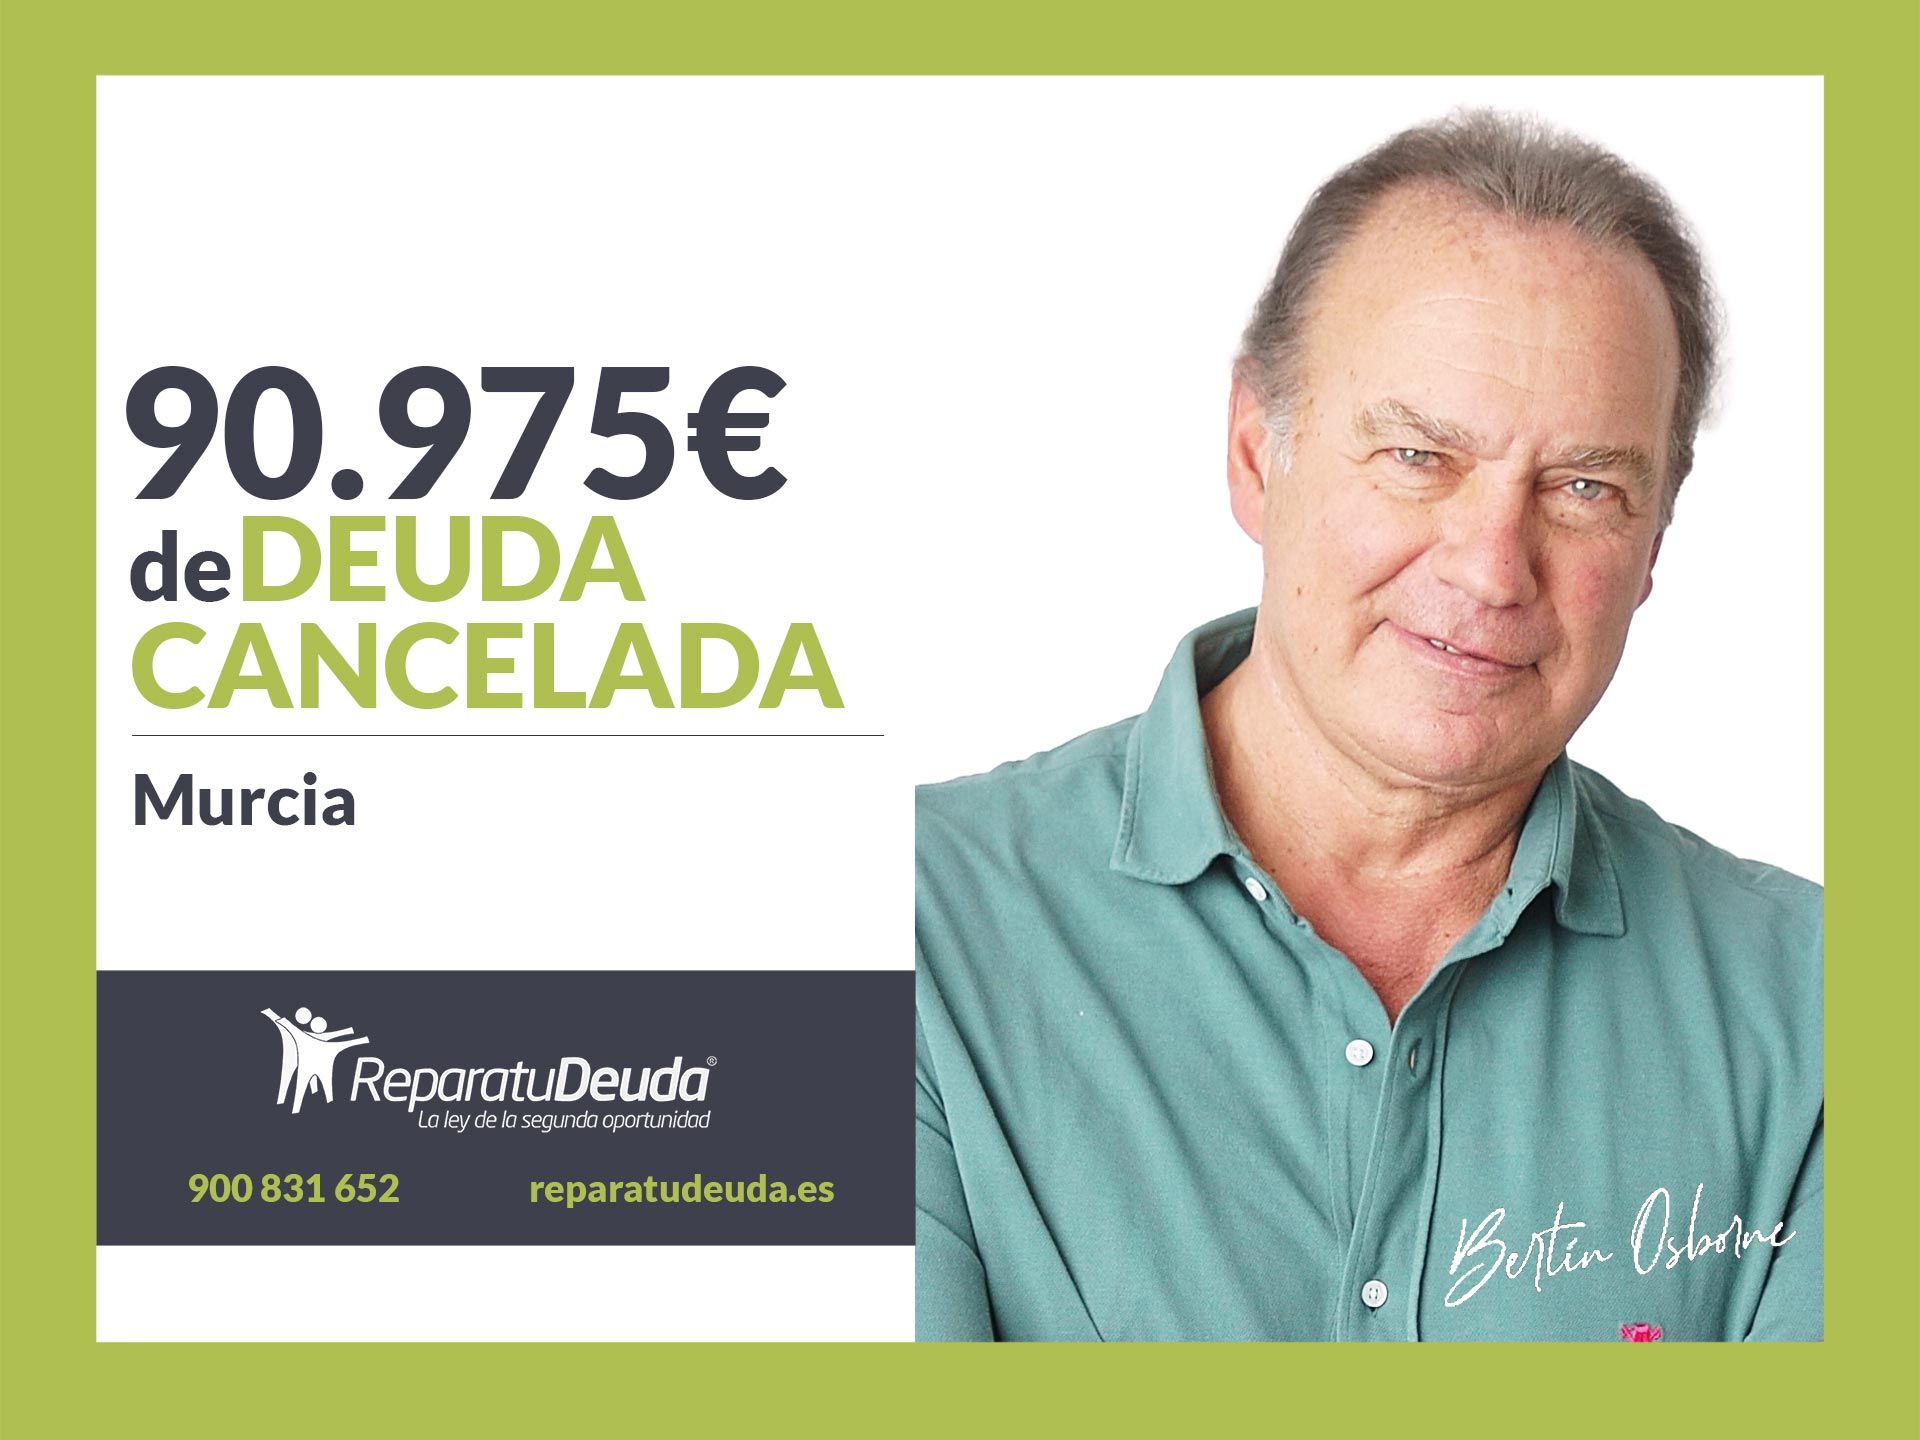 Repara tu Deuda Abogados cancela 90.975 ? en Murcia con la Ley de la Segunda Oportunidad